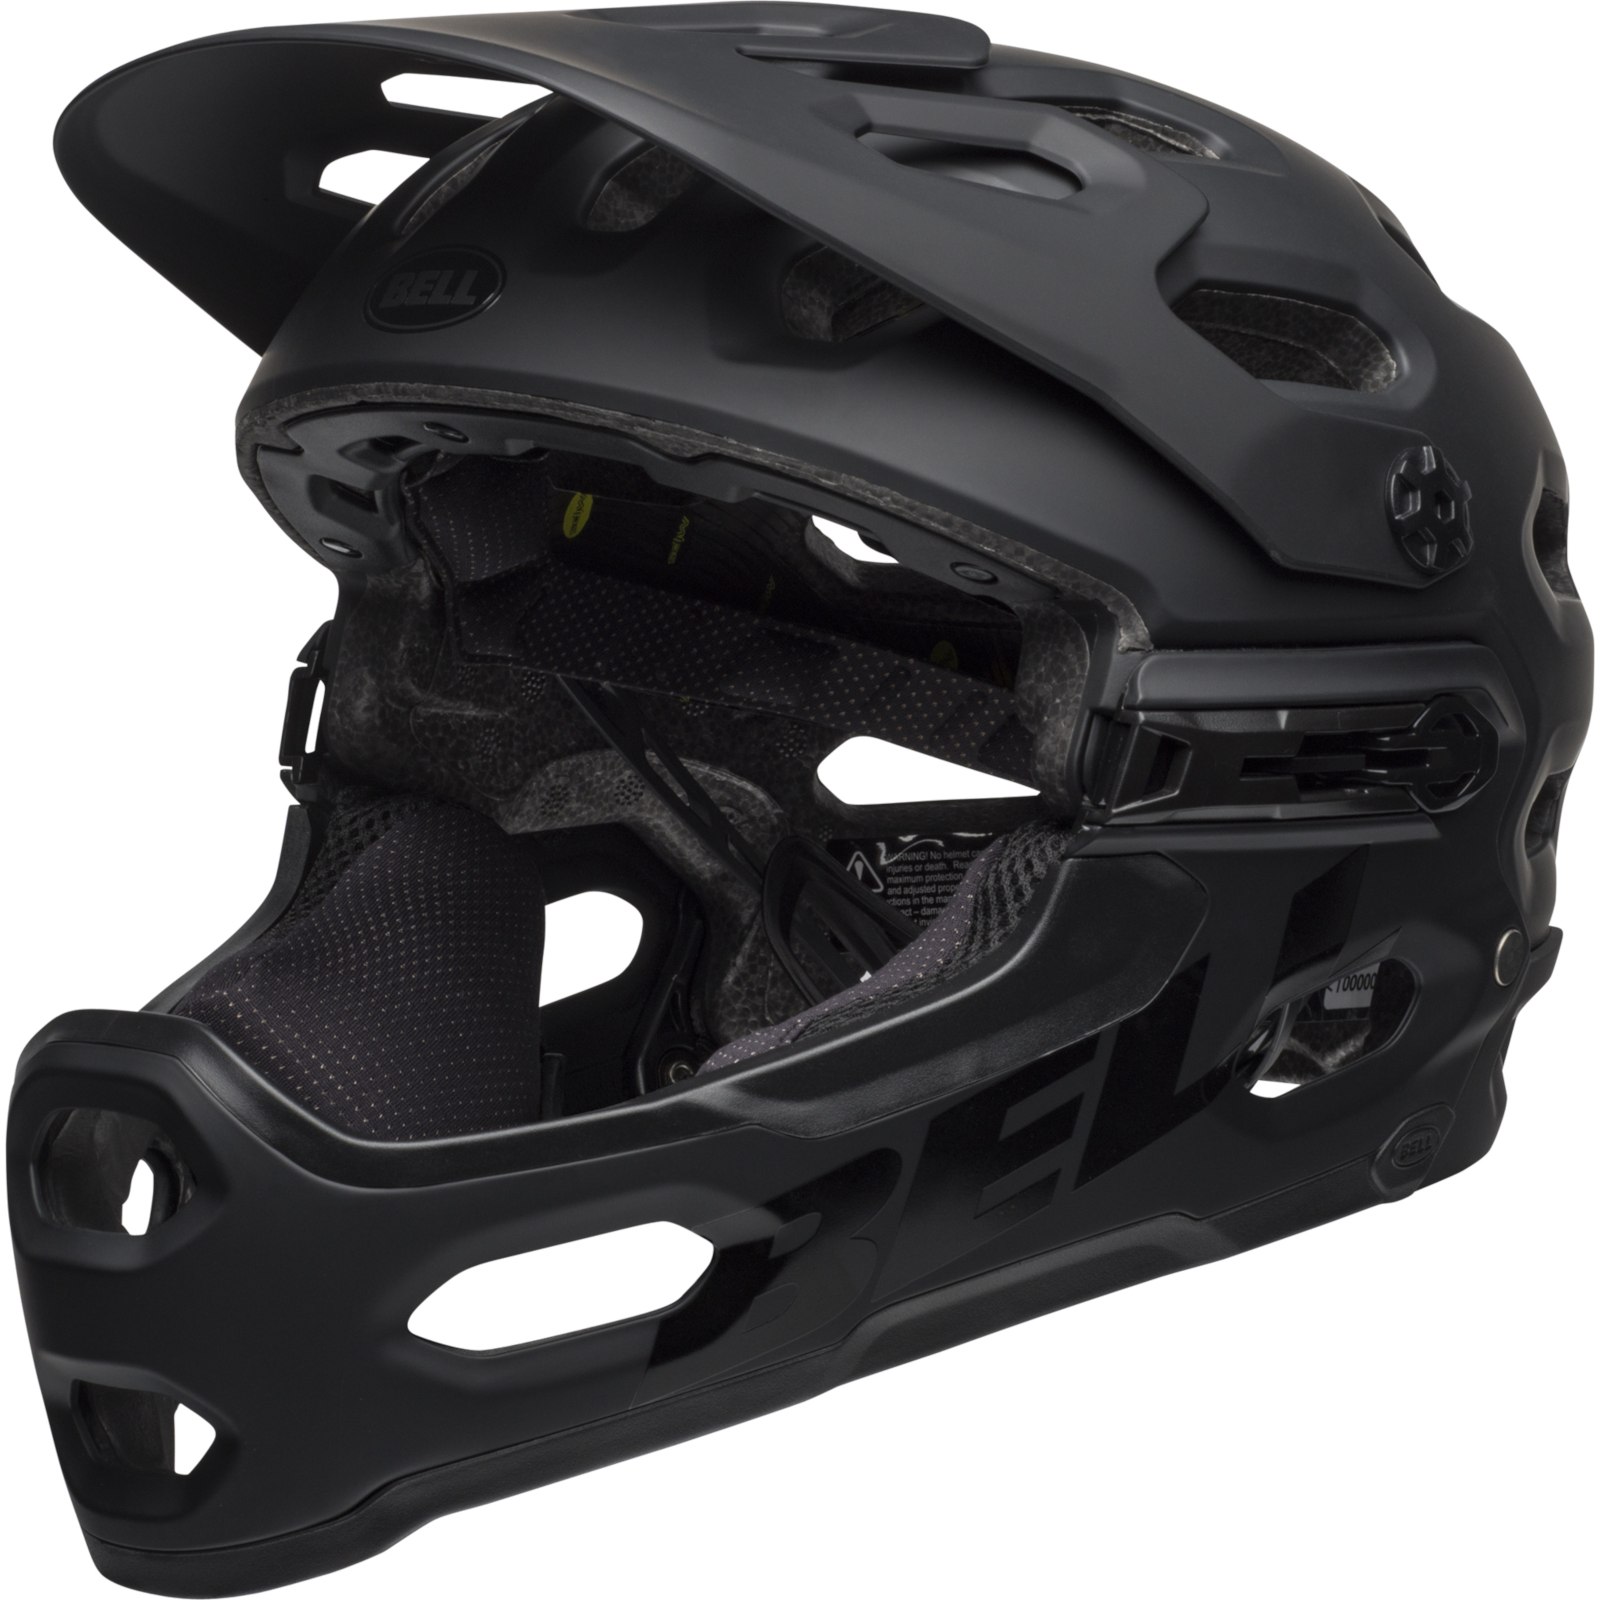 Produktbild von Bell Super 3R MIPS Helm - matte black/gray